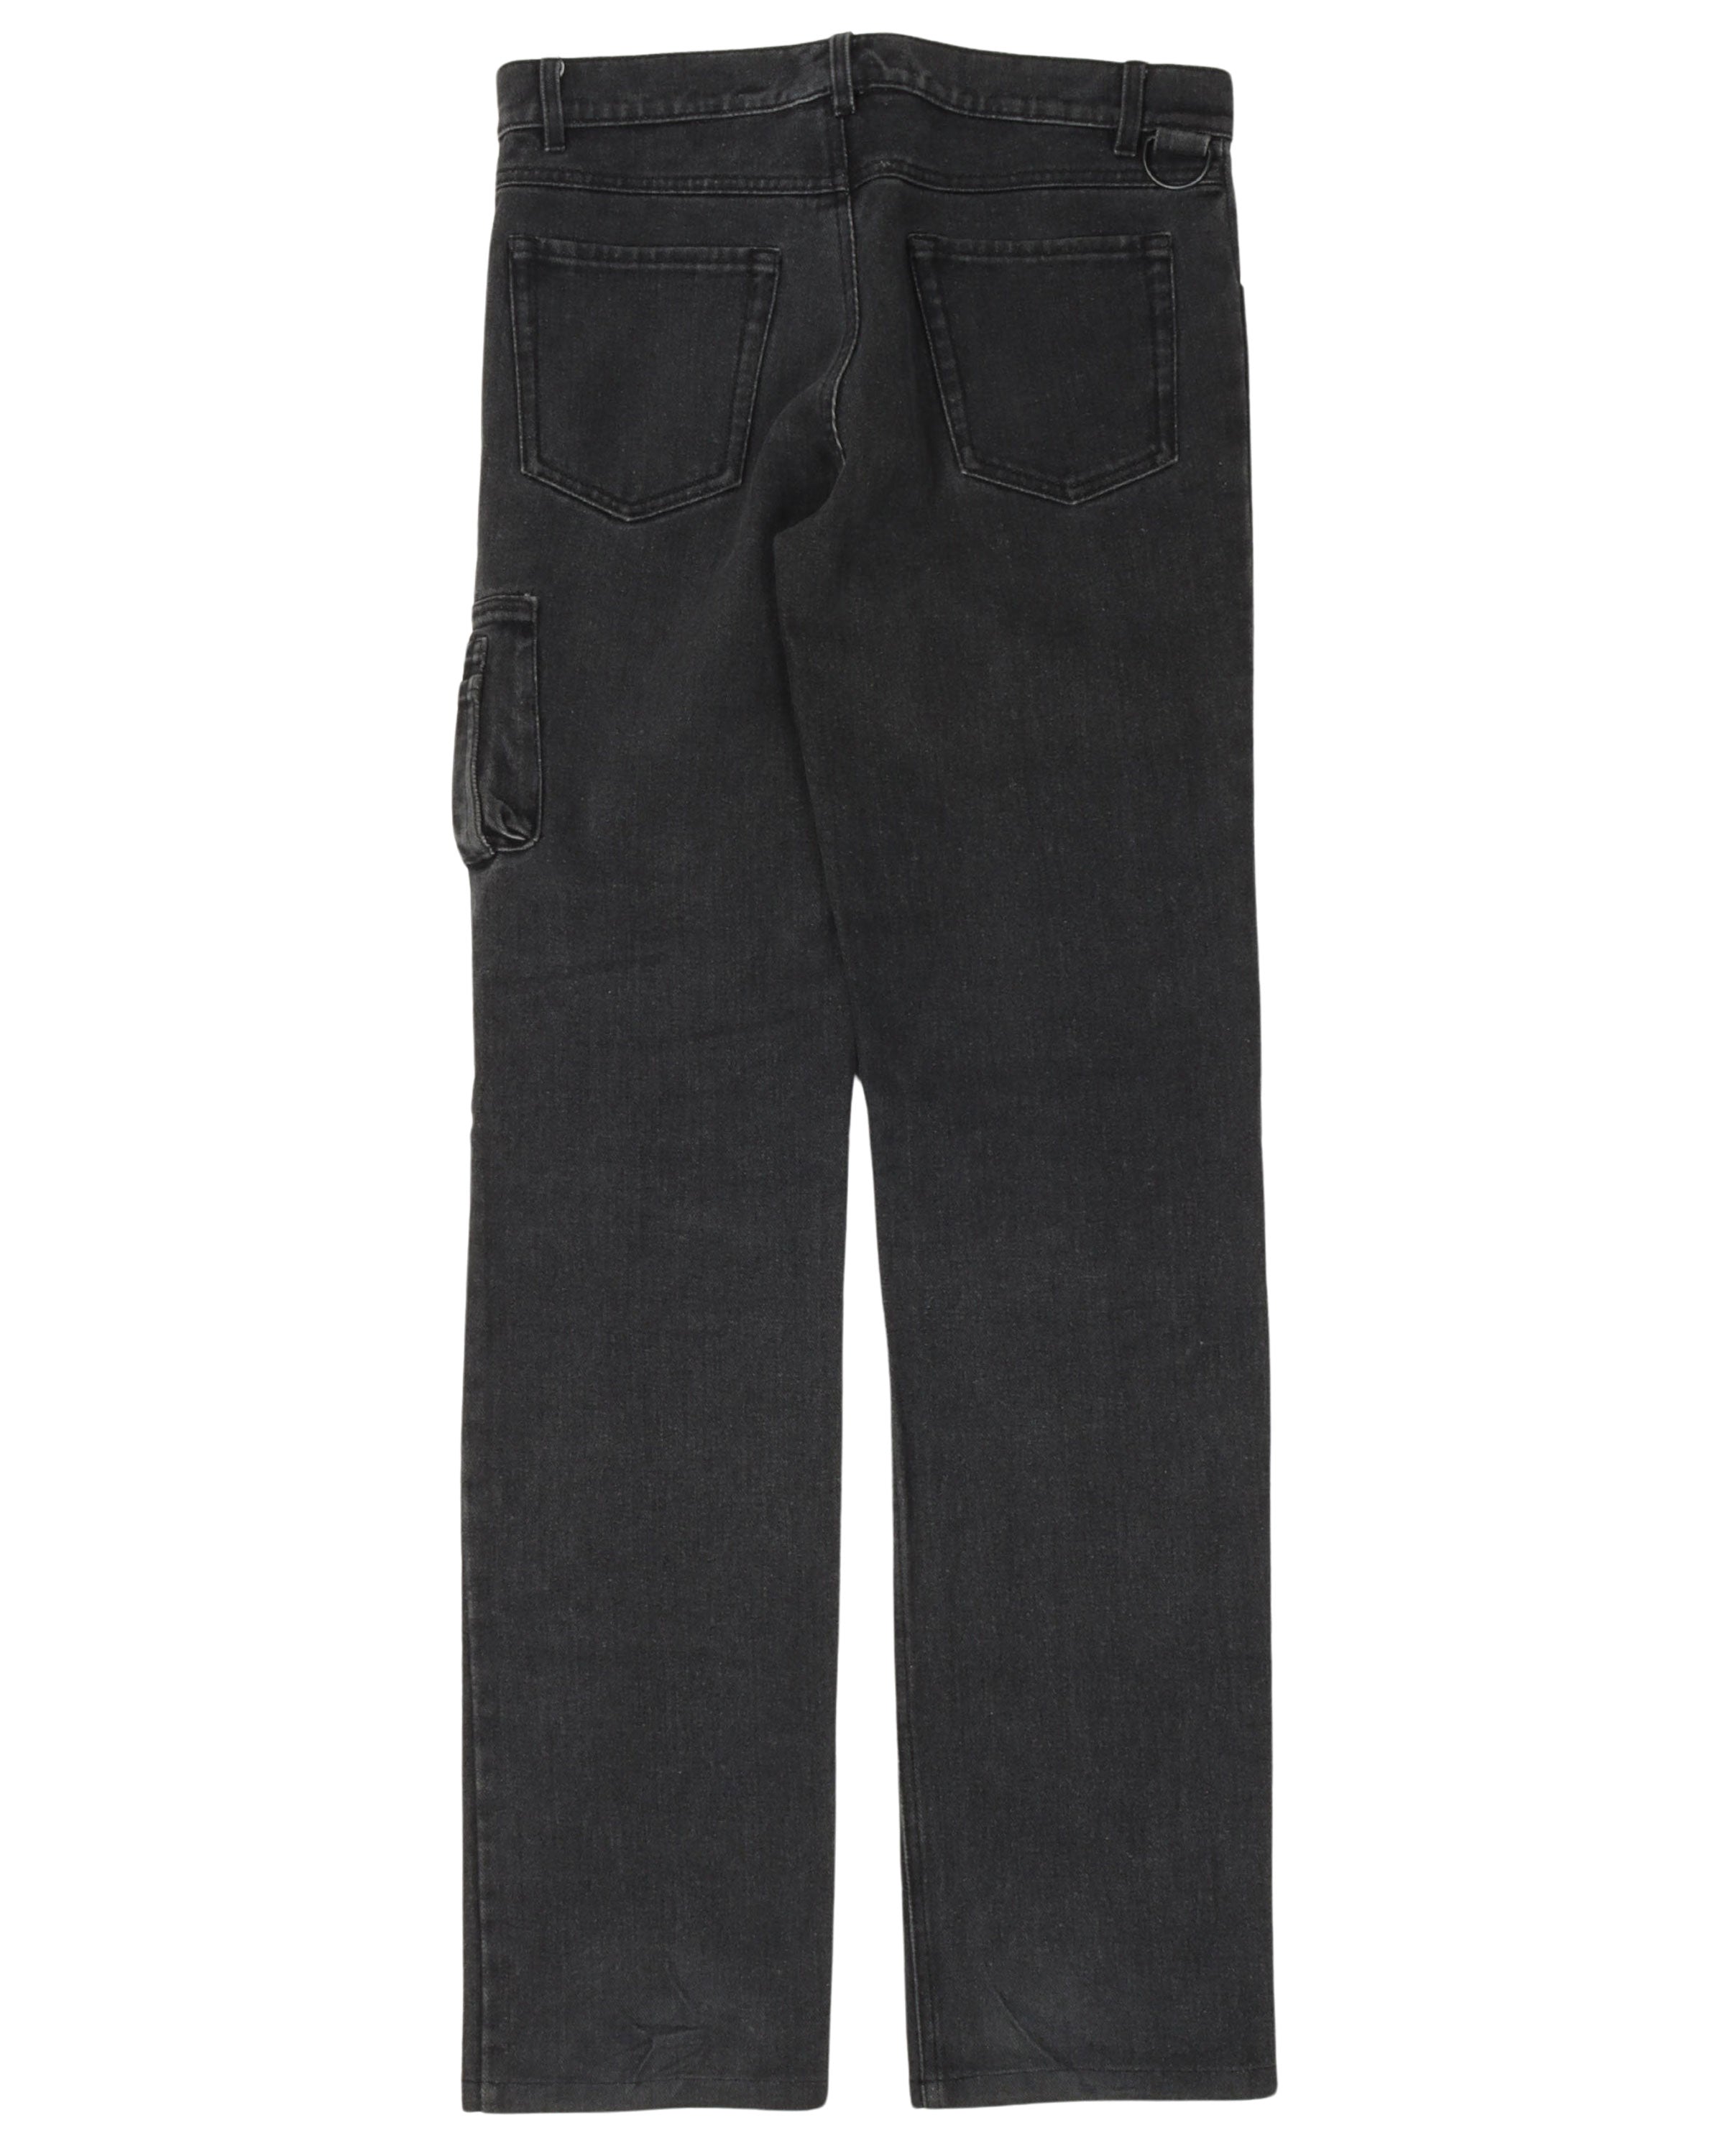 AW04 Cargo Pocket Jeans